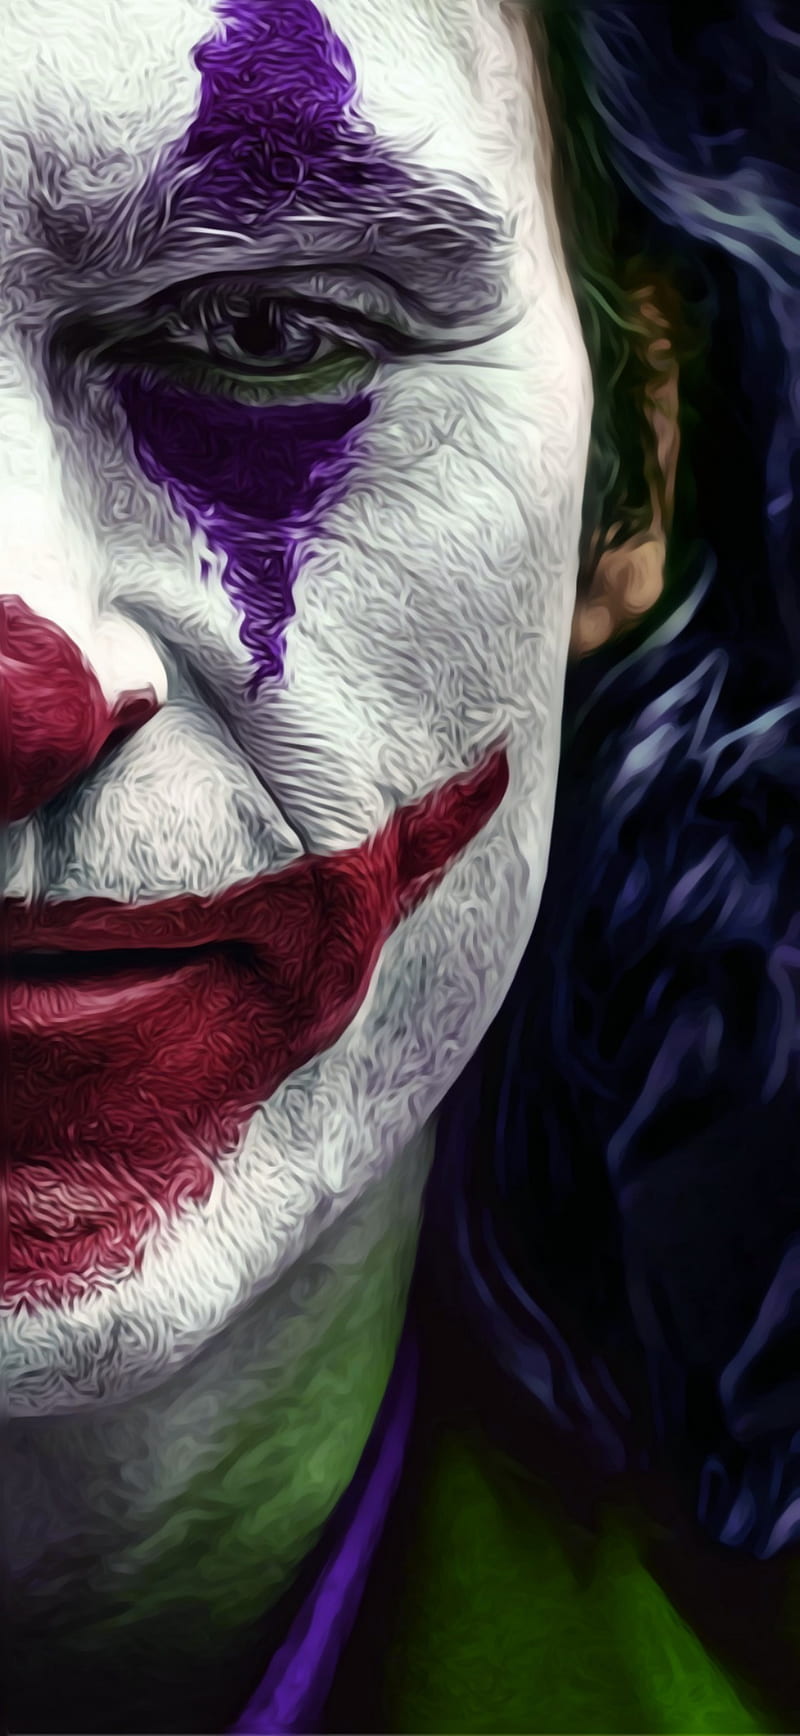 Joker1-Rockmods, joker, joker 2019, joker 2019 , joker face, poco, poco f1, rbmods, rockmods, rockmods, HD phone wallpaper